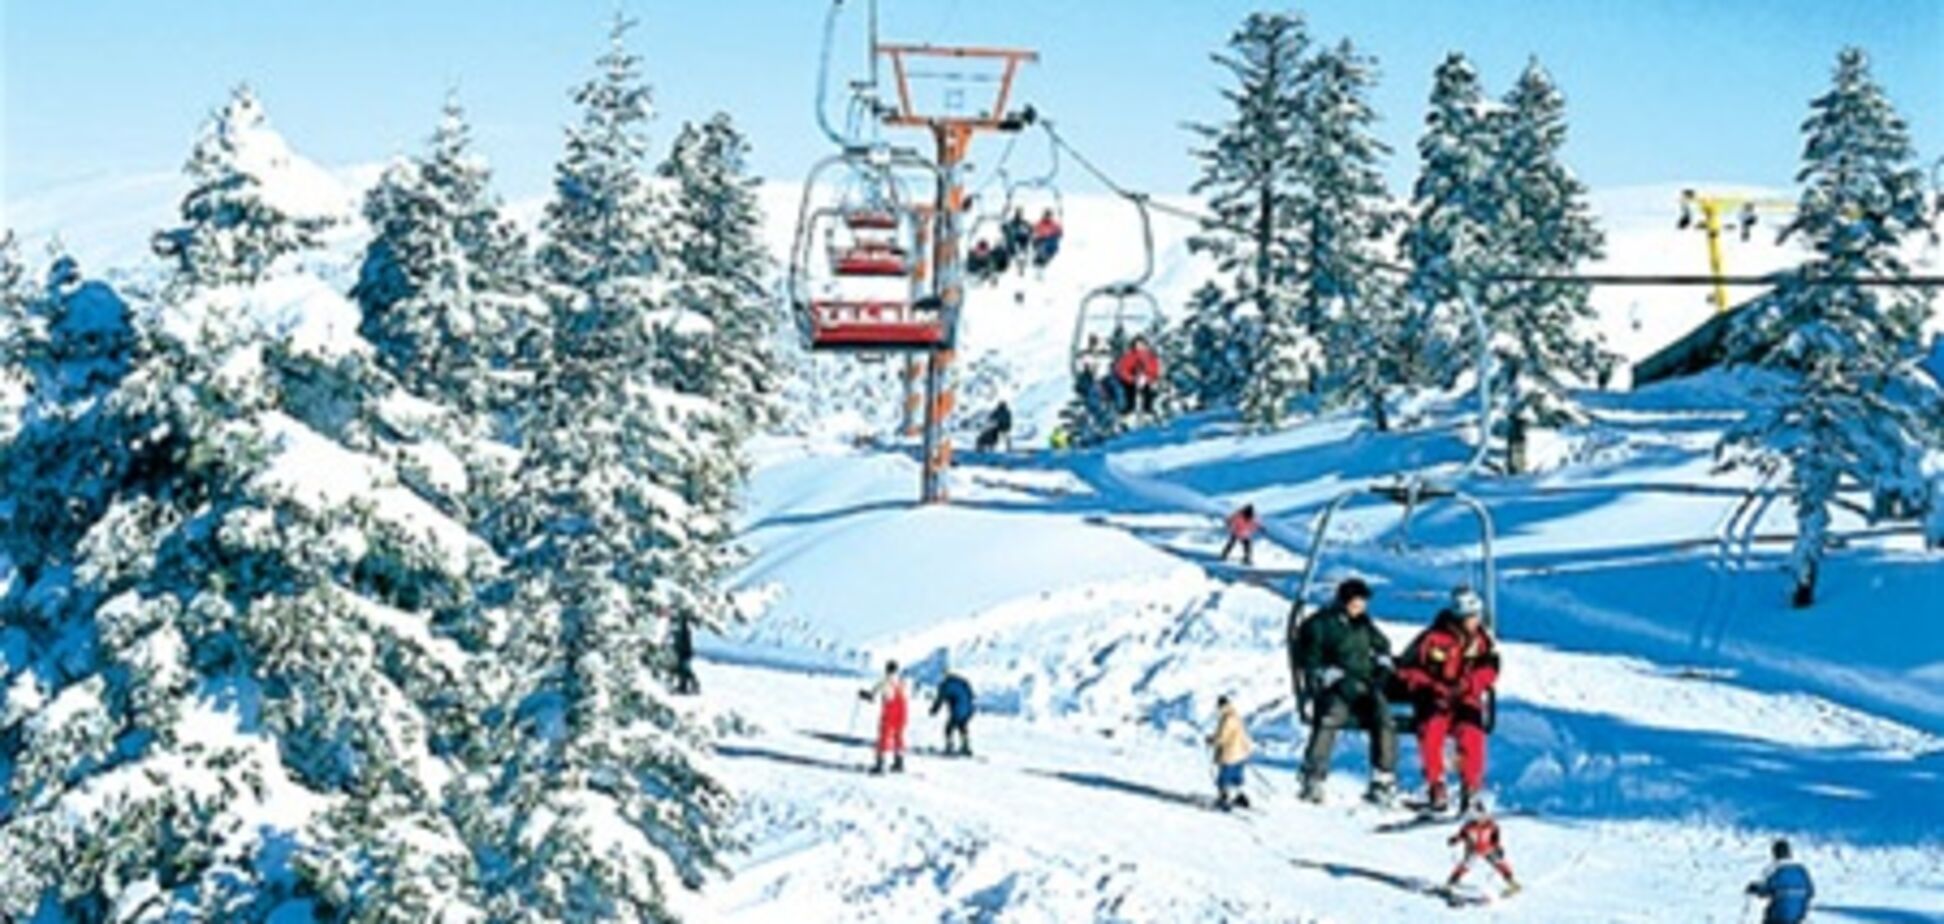 К зимнему сезону туристам предложат отдых на горнолыжных курортах Турции